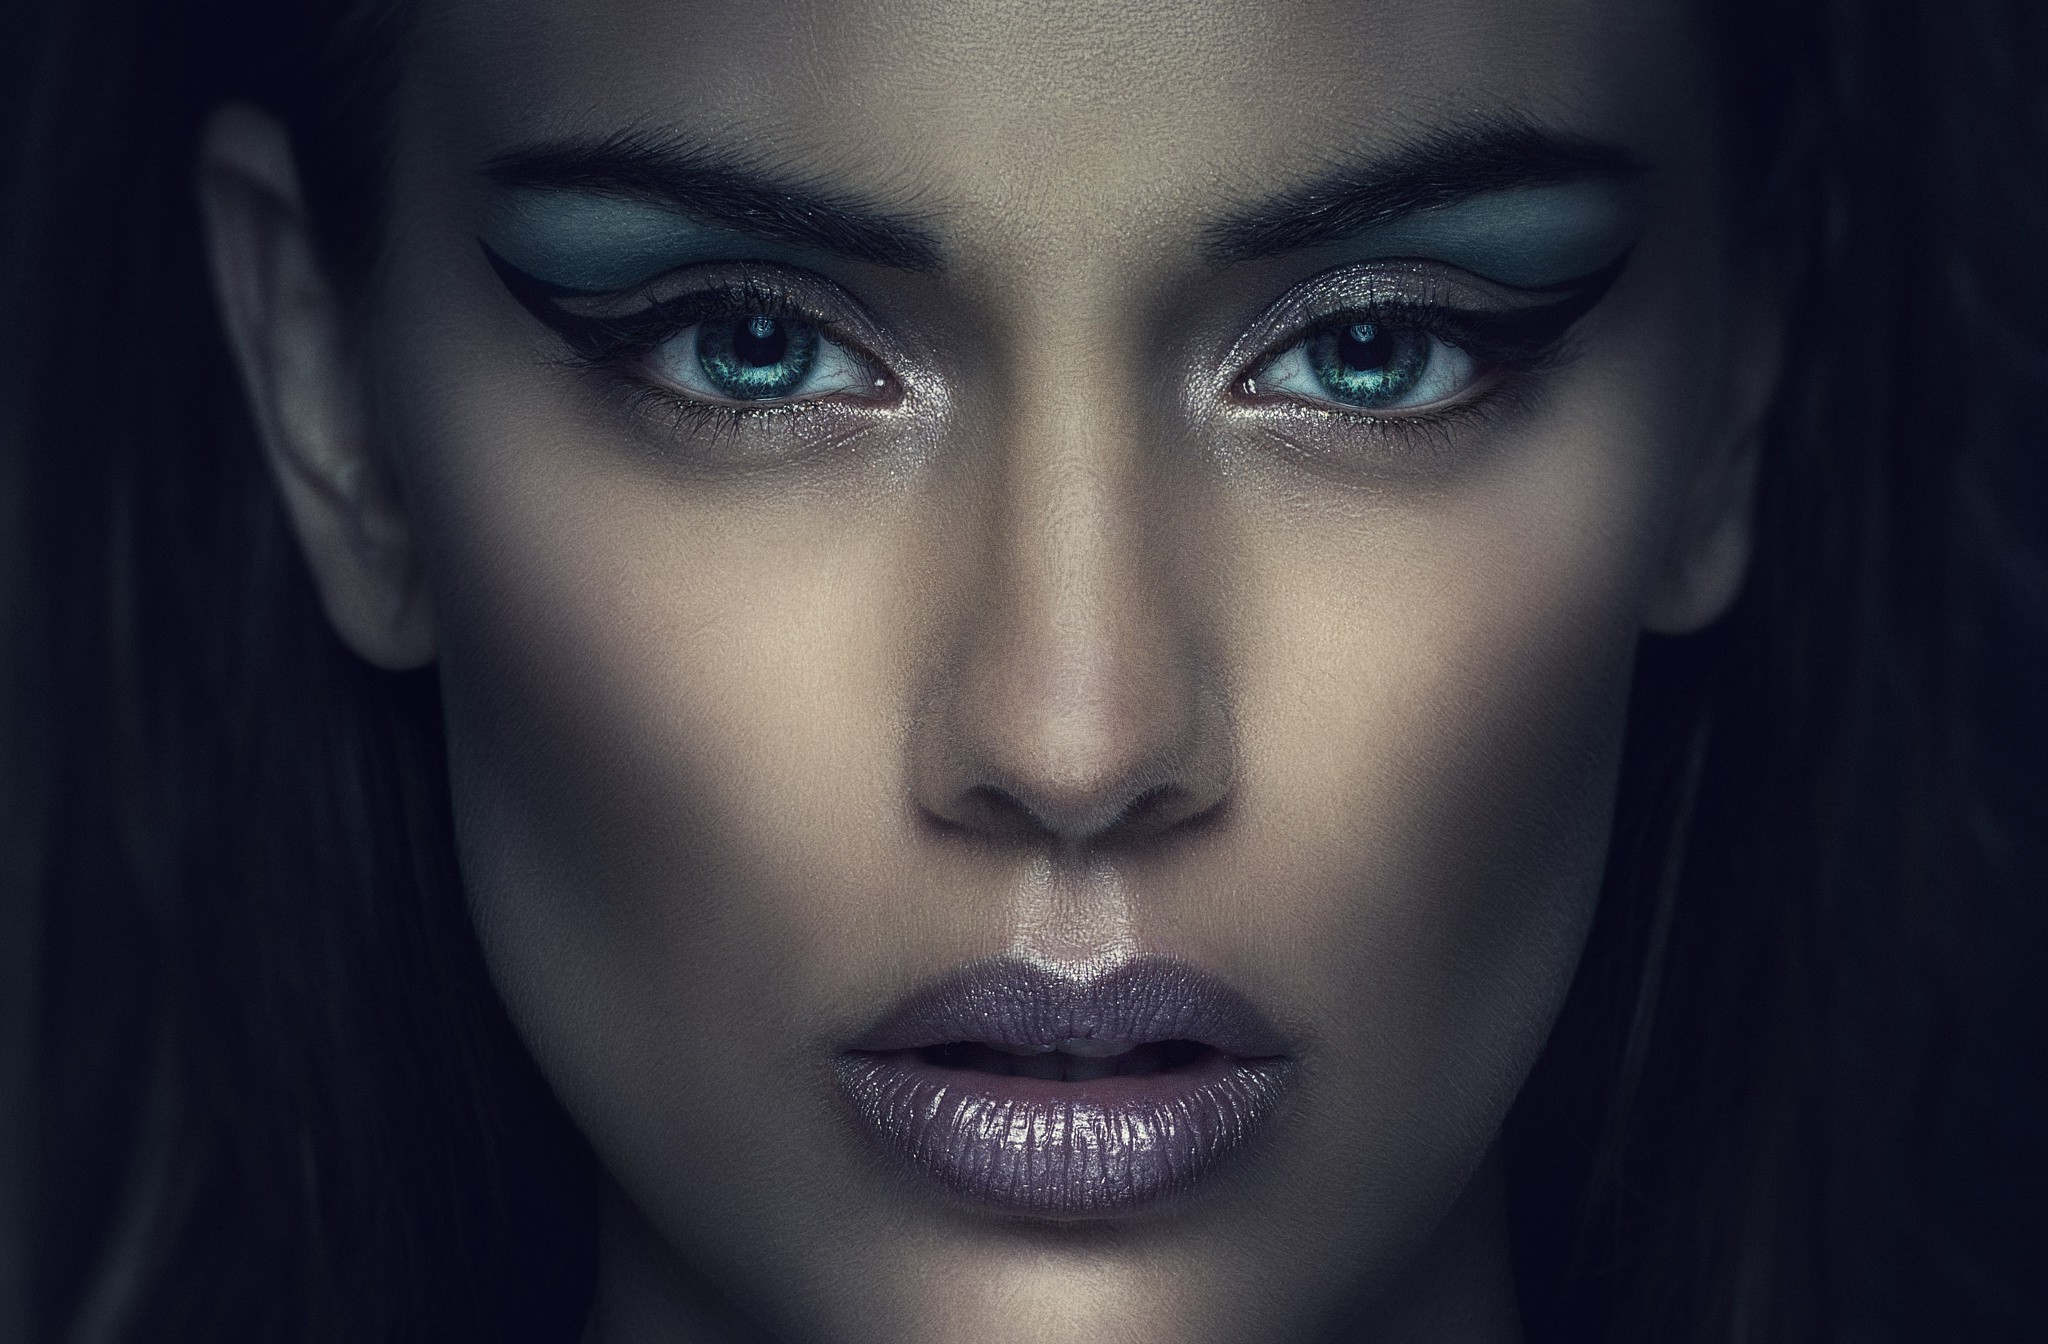 http://wallup.net/wp-content/uploads/2016/05/13/326219-women-model-face-closeup-makeup.jpg